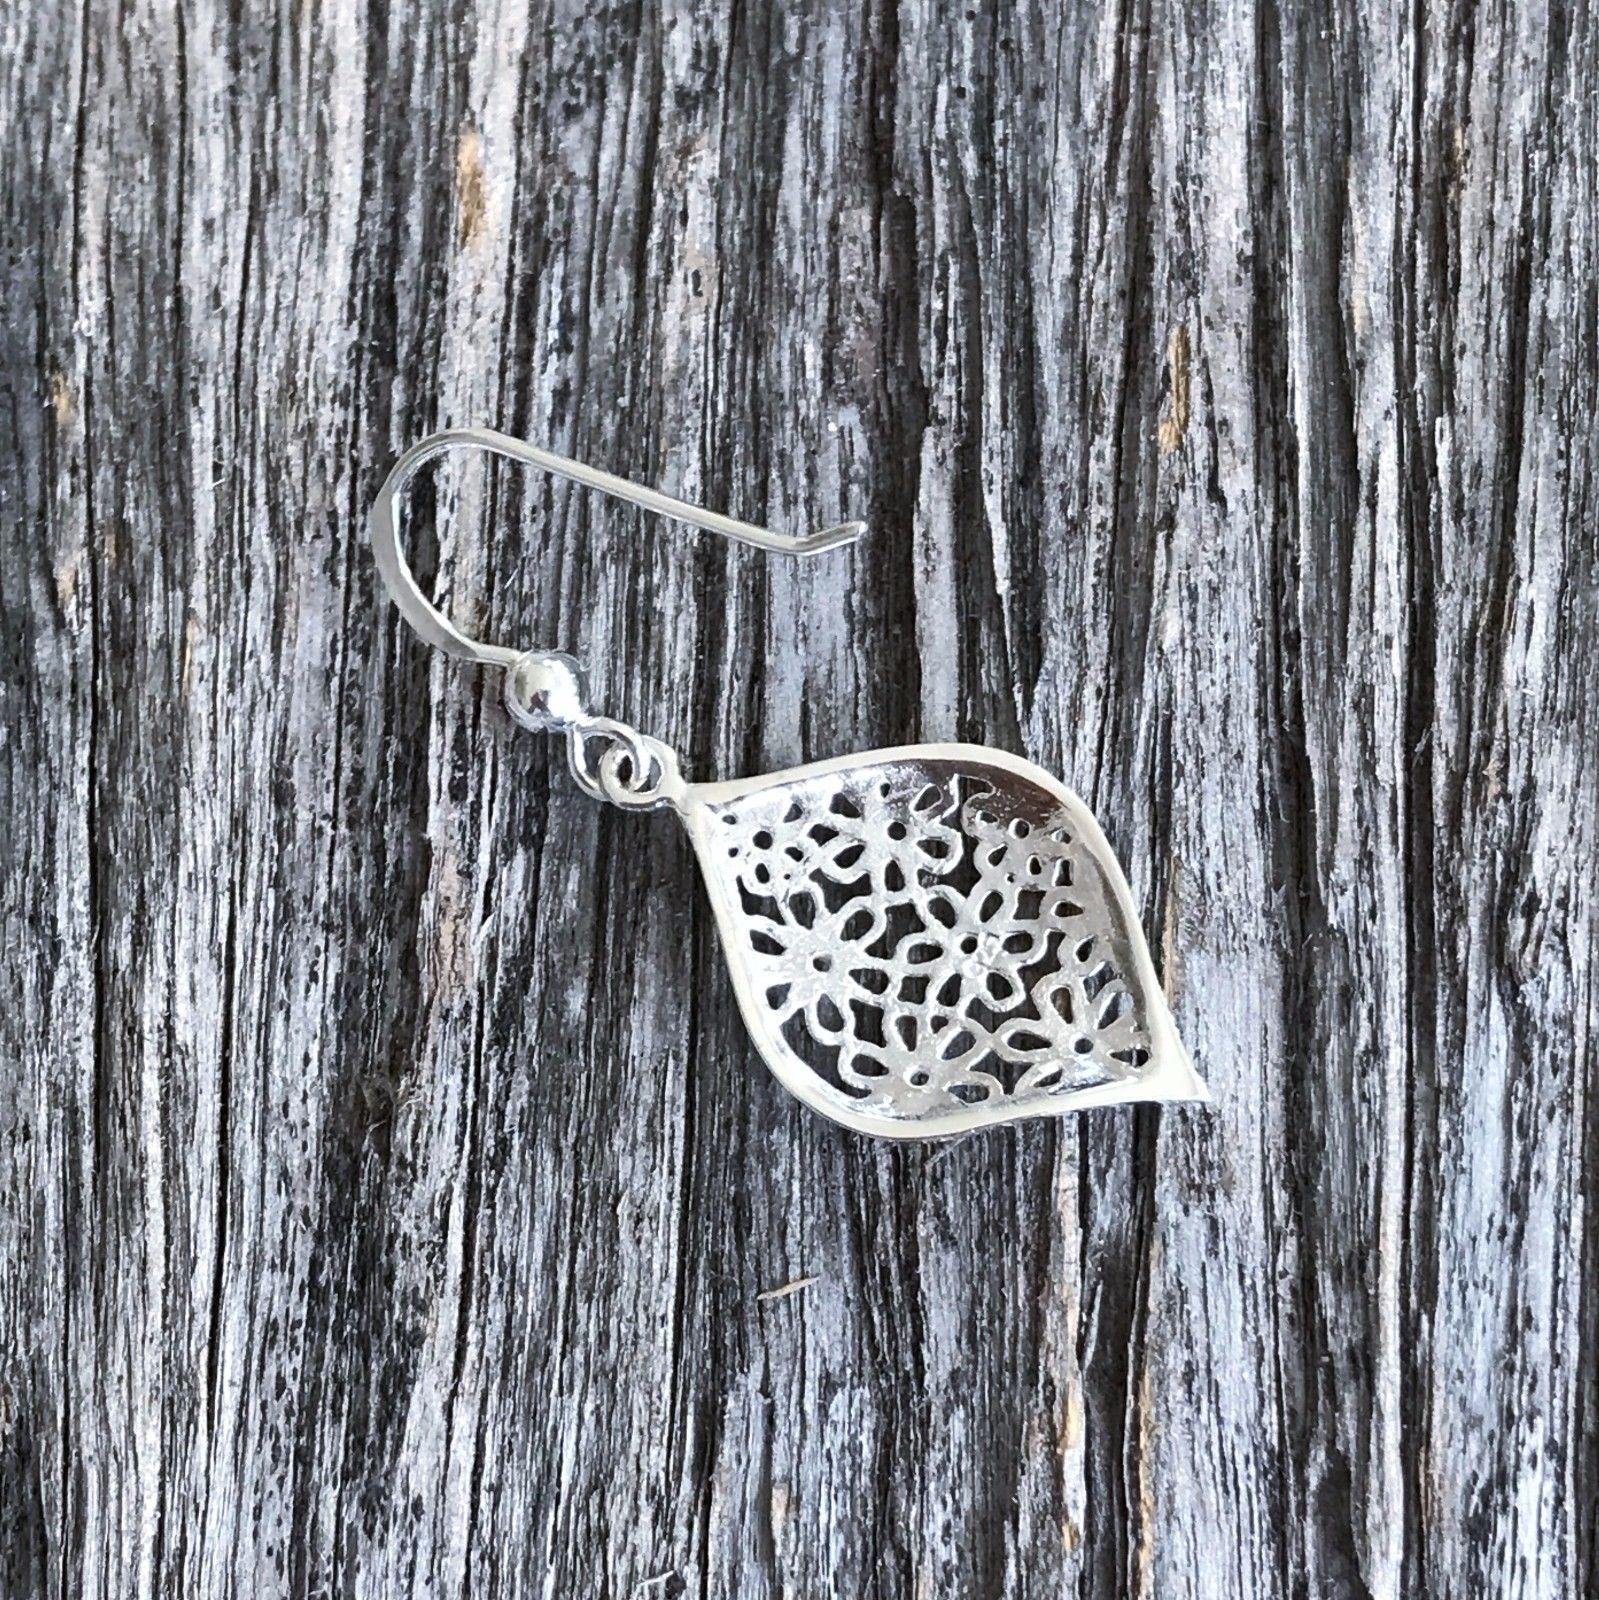 Sterling Silver Flower Cut Out Pattern Hook Drop Dangle Earrings - STERLING SILVER DESIGNS